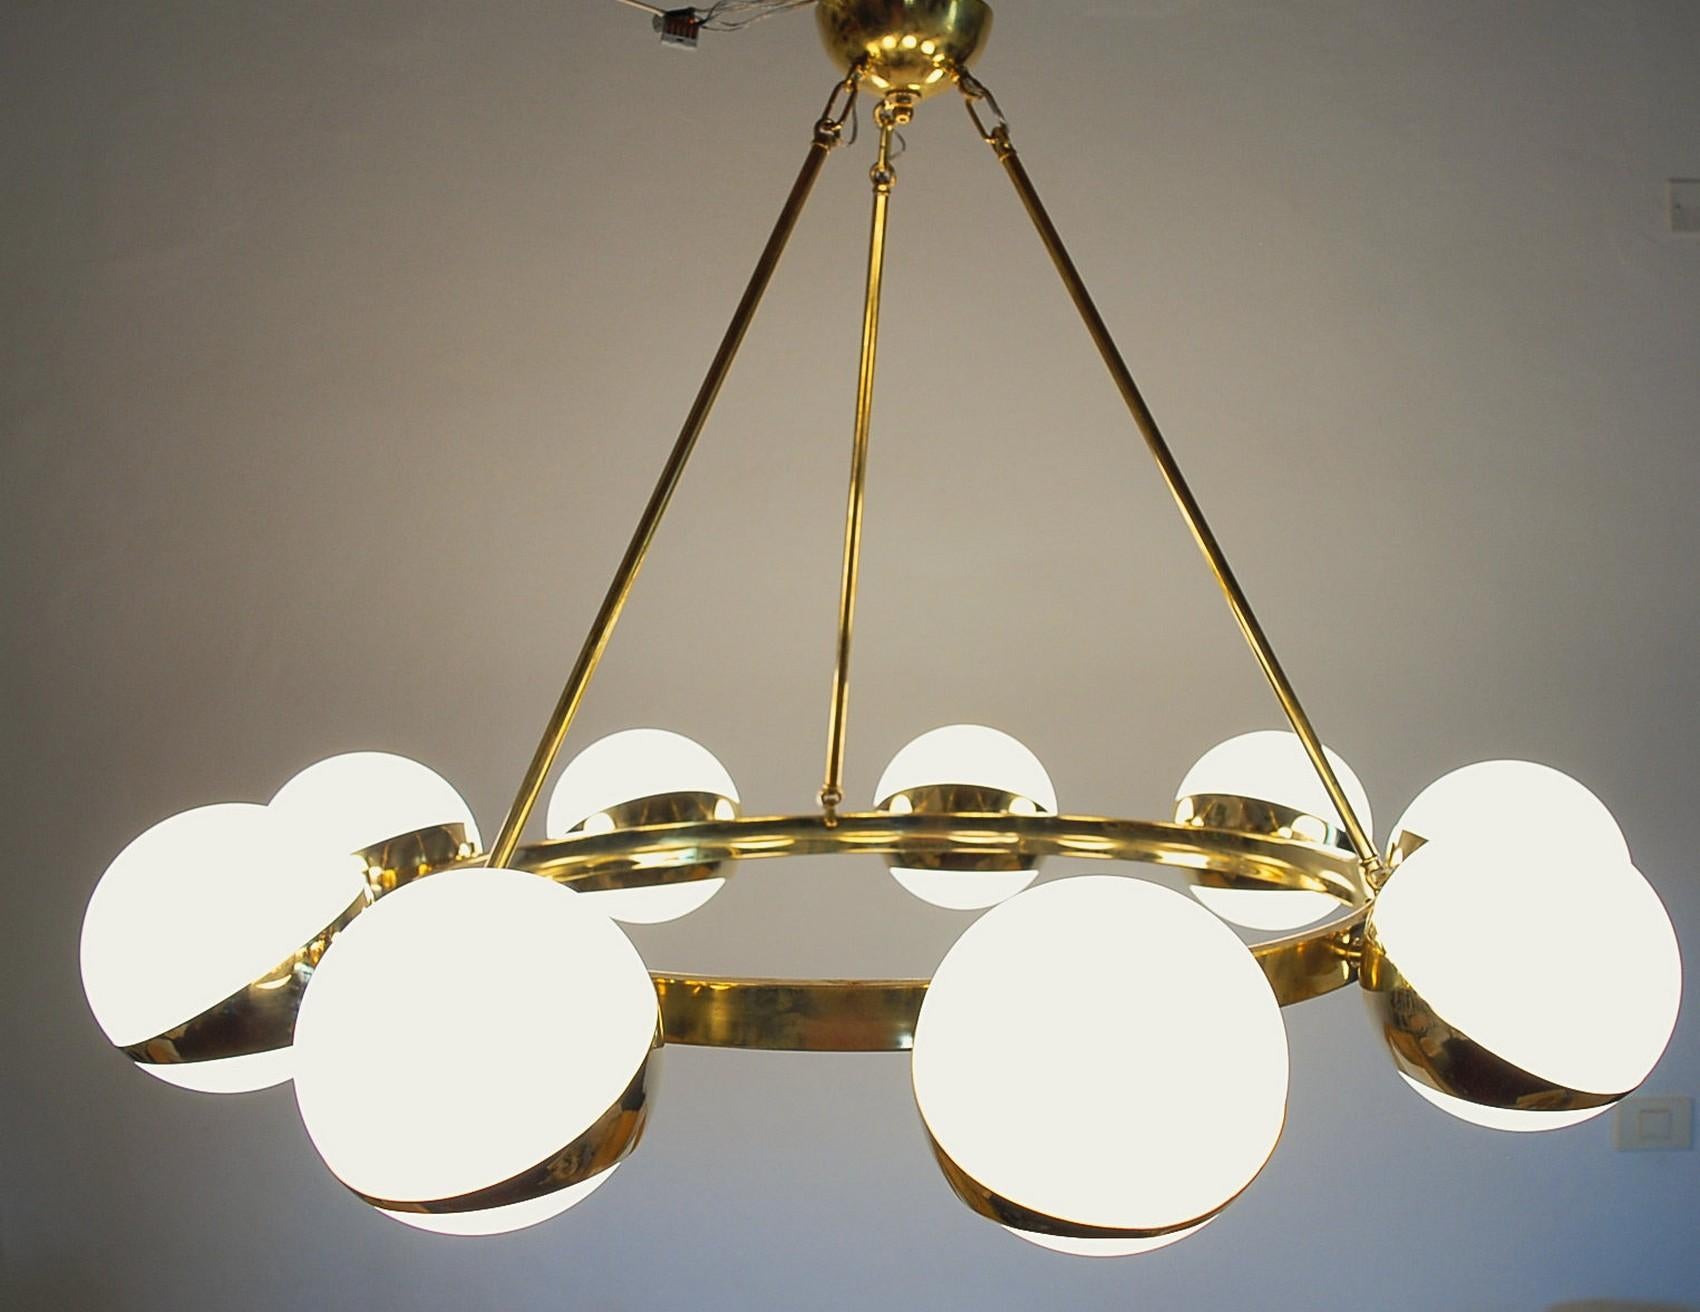 Brass and lattimo glass chandelier, 9 spheres Stilnovo Designed for light output 12